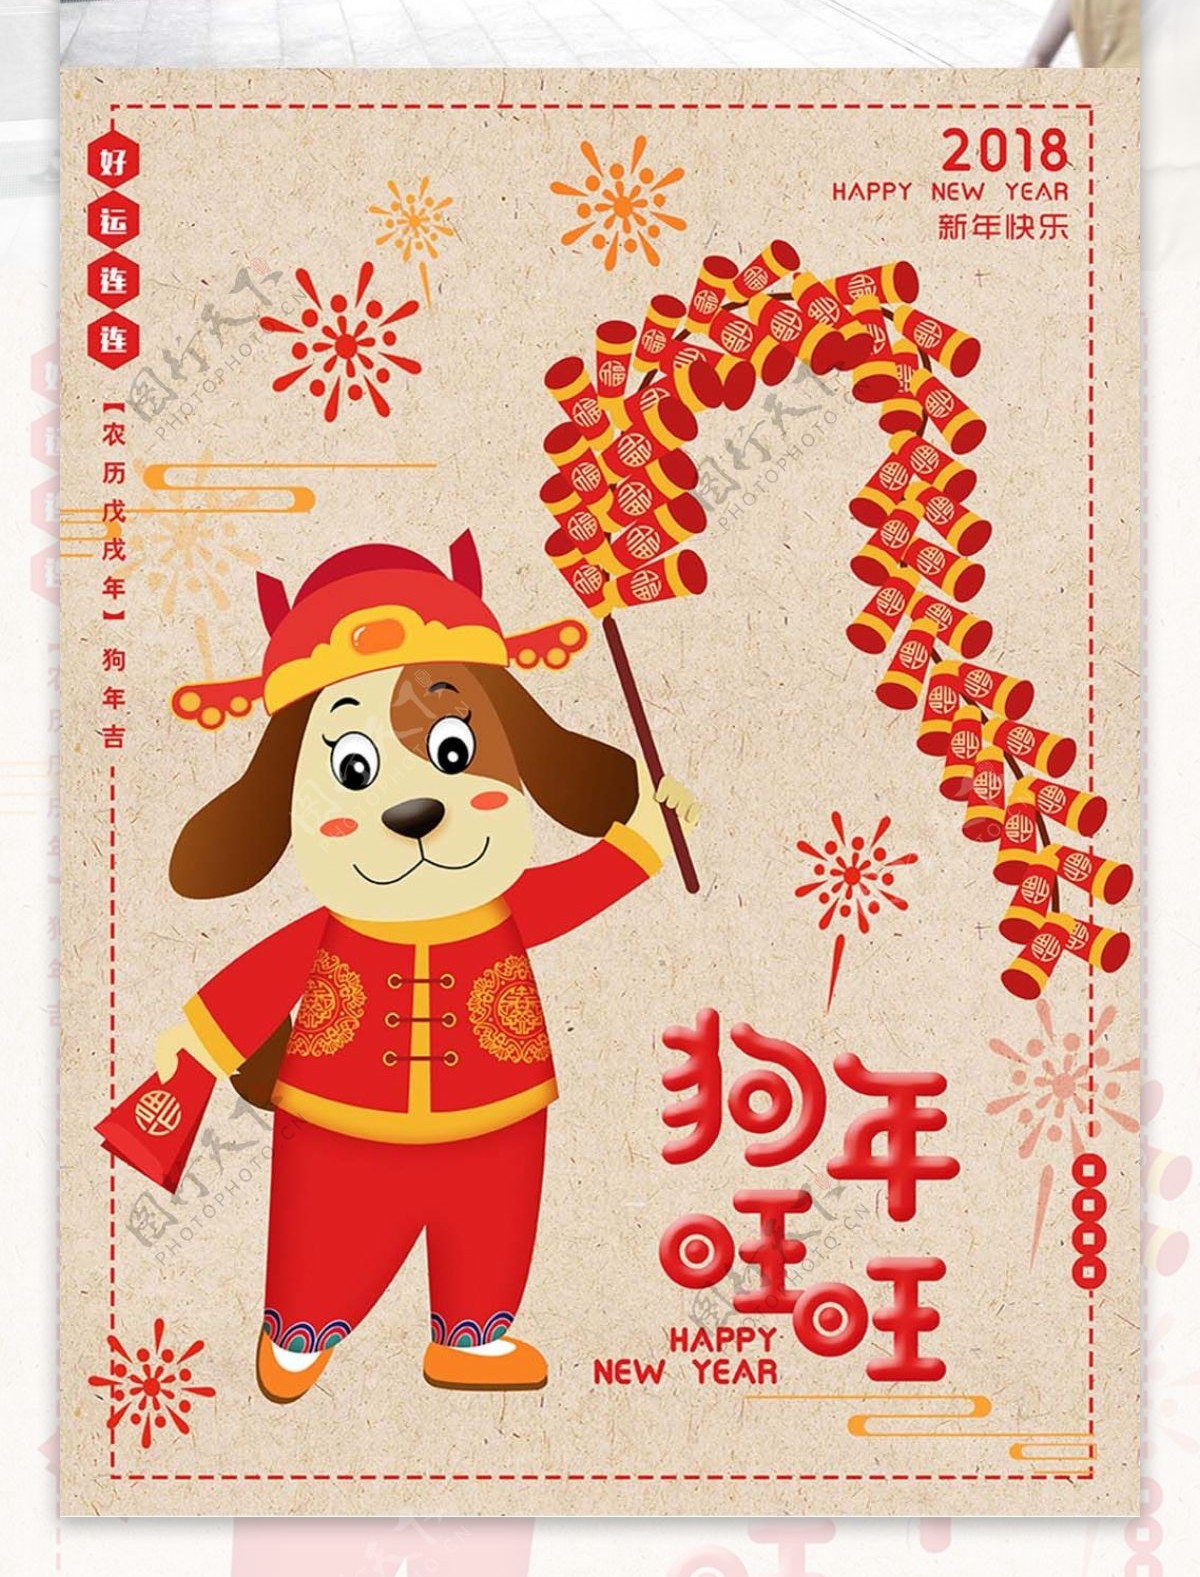 2018年狗年旺旺原创插画节日海报设计